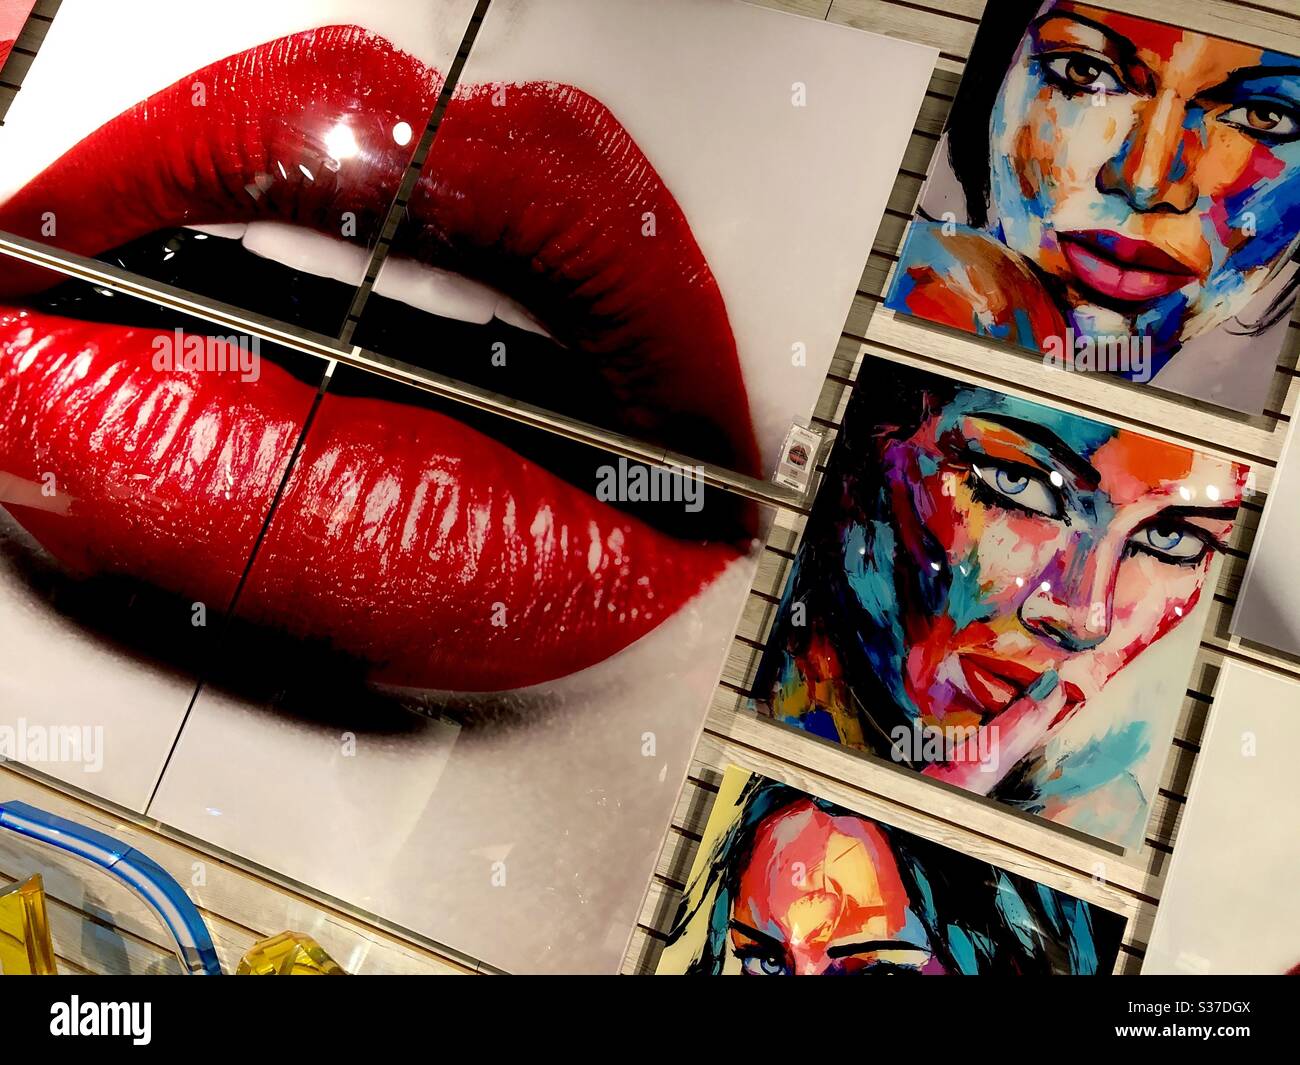 Moderne Kunstwerke in einem Möbelraum mit Frauenmund mit rotem Lippenstift und mehreren abstrakten Porträts. Stockfoto